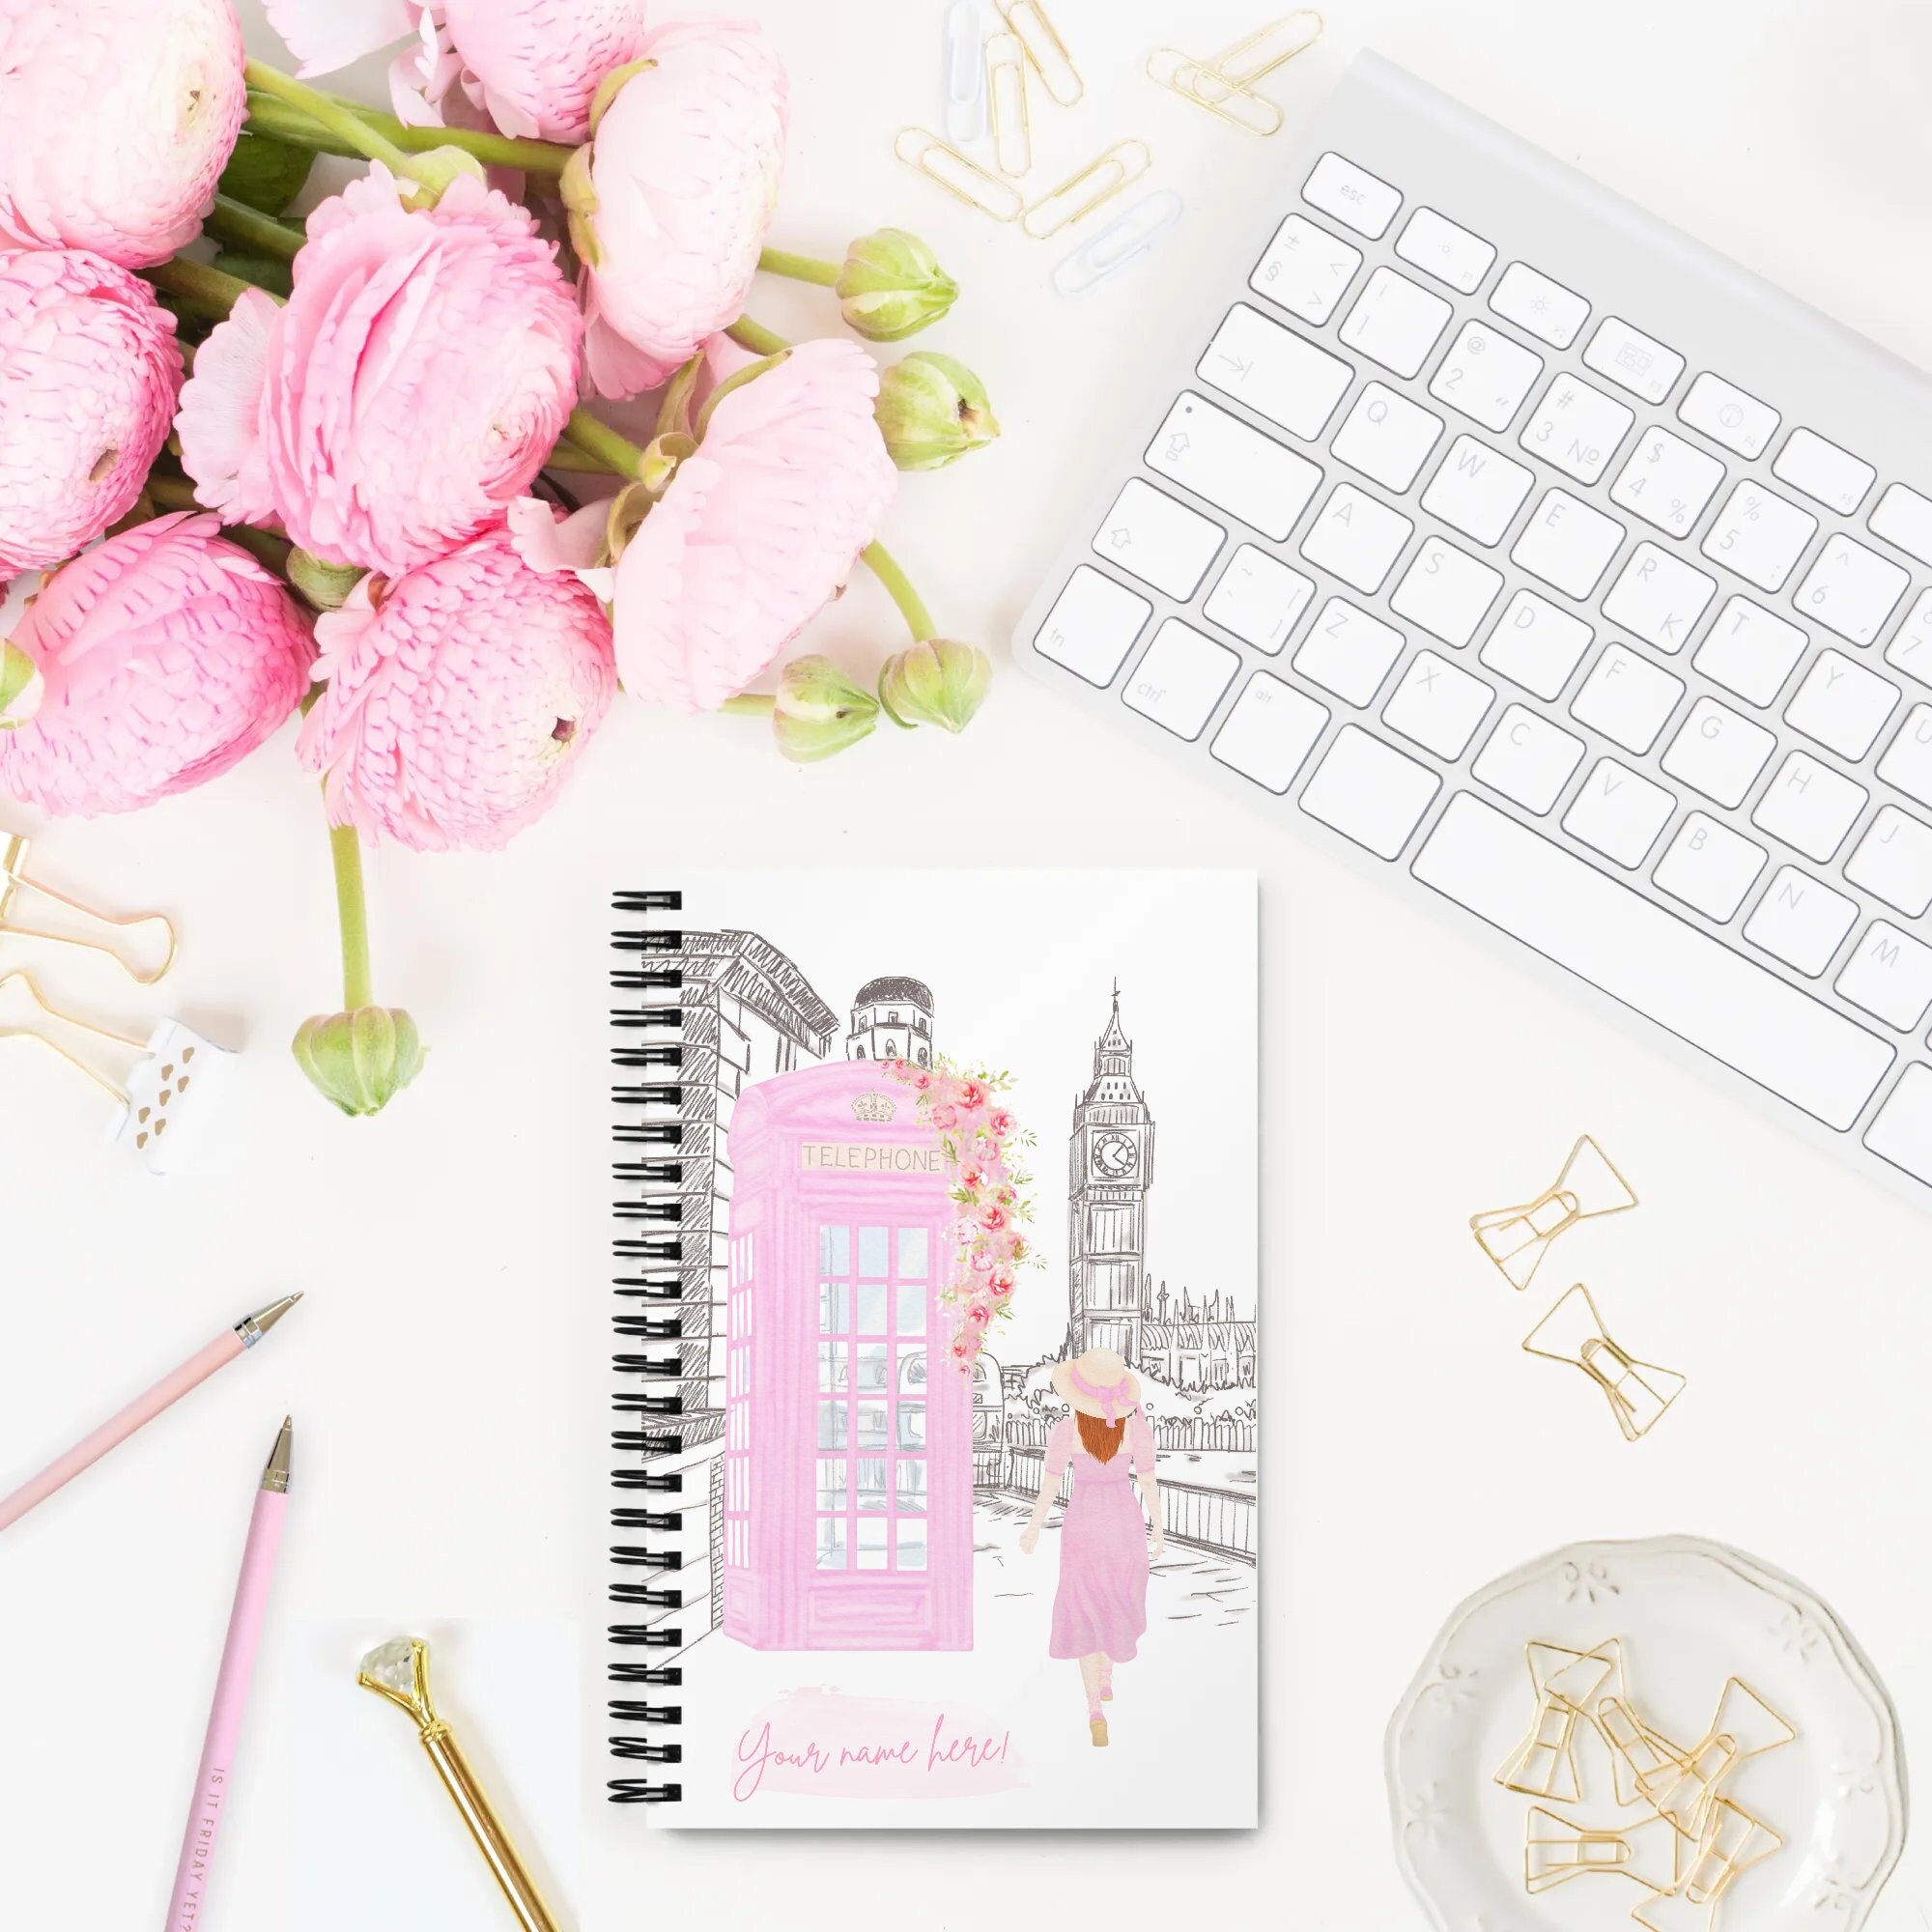 Notebook - Journal, Pink